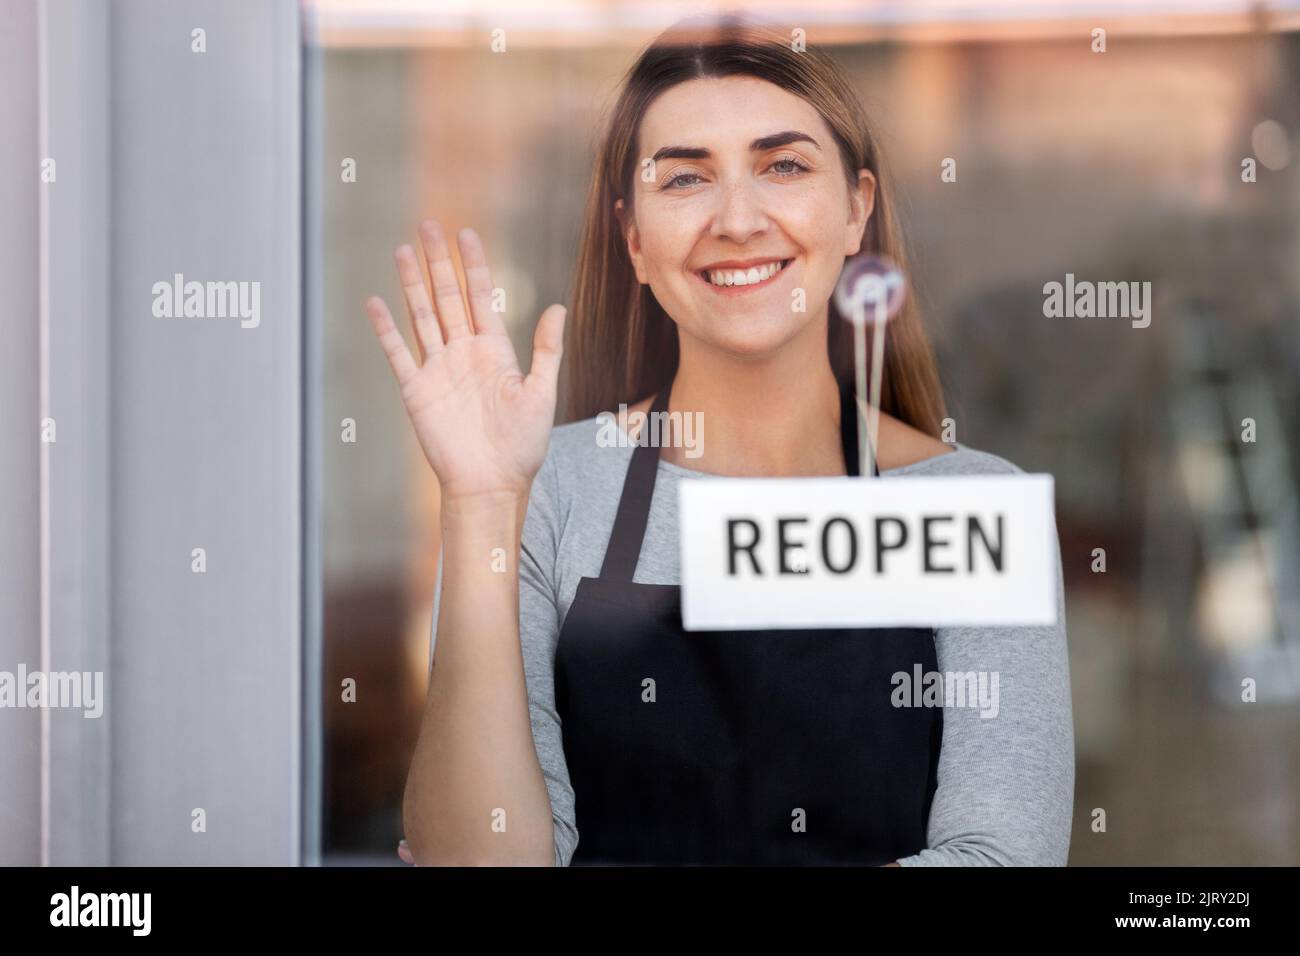 happy woman hanging reopen banner to door glass Stock Photo